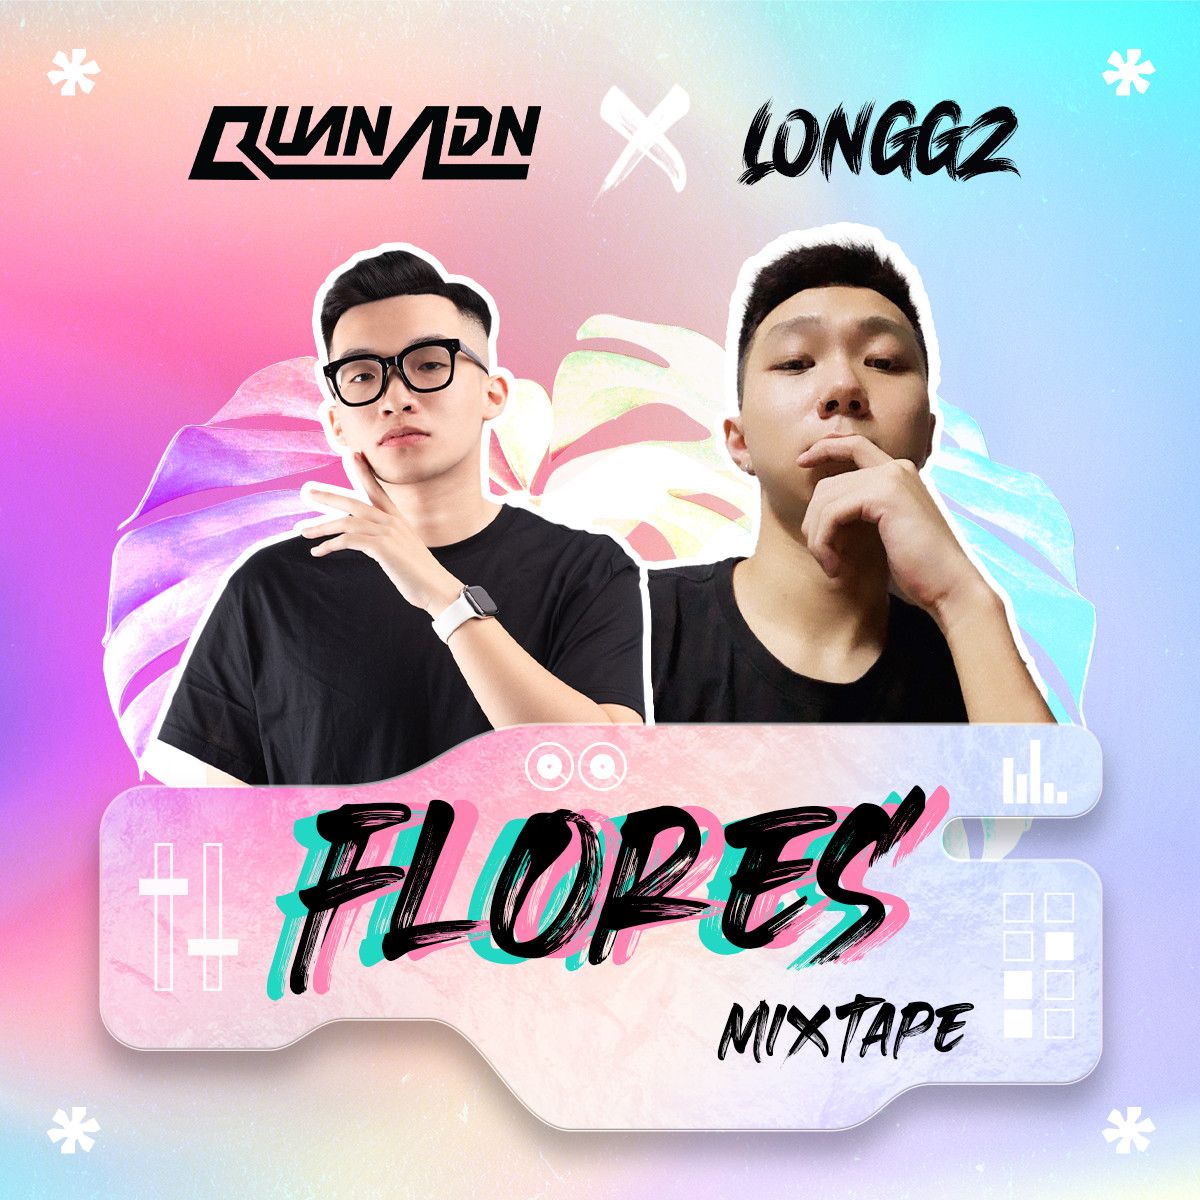 אראפקאפיע Mixtape - Flores by Quan ADN & LONGGZ